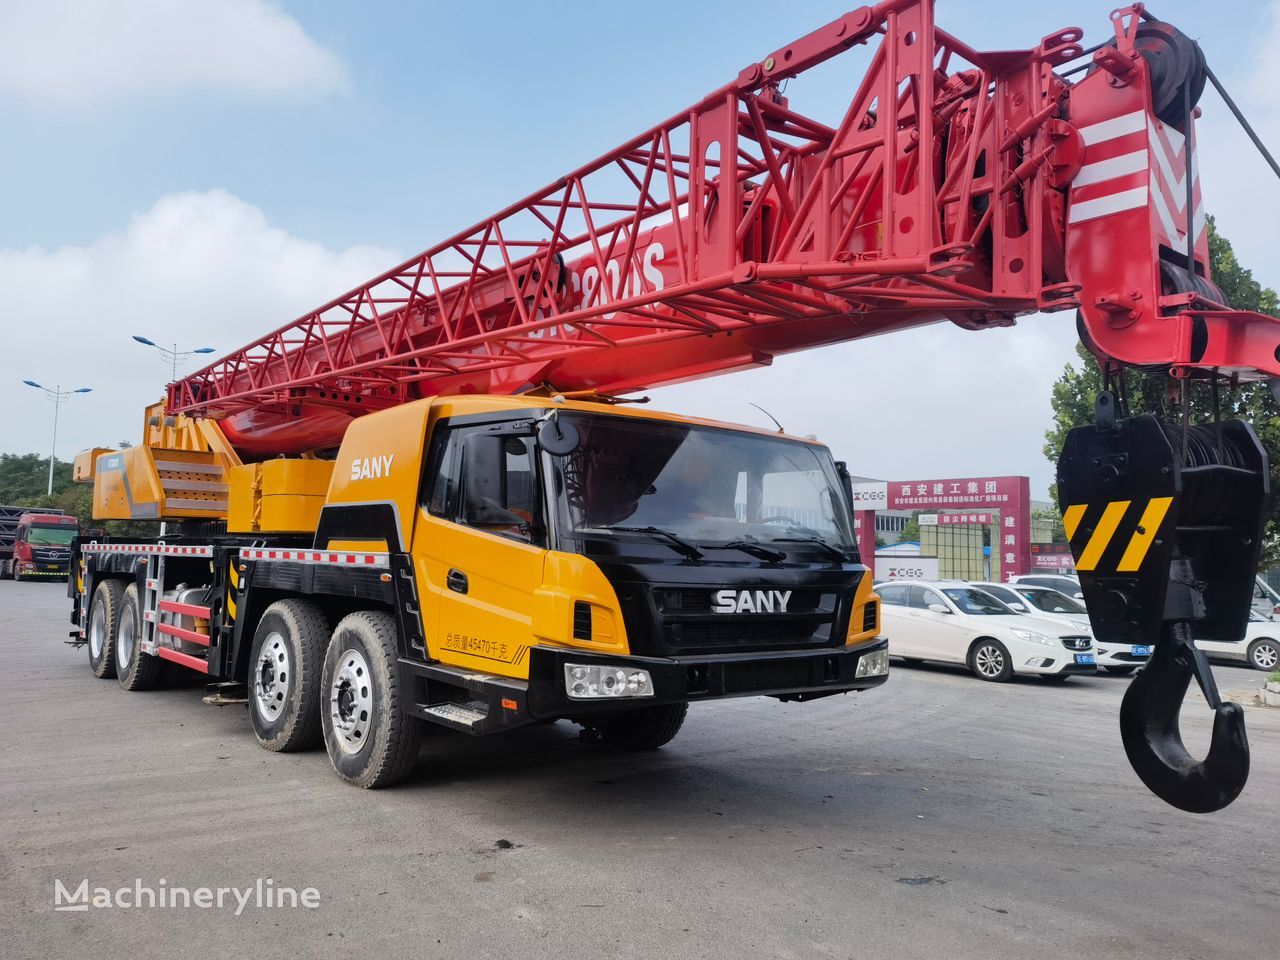 移动式起重机 Sany  Sany STC800S 80 ton used mobile truck crane mobile crane